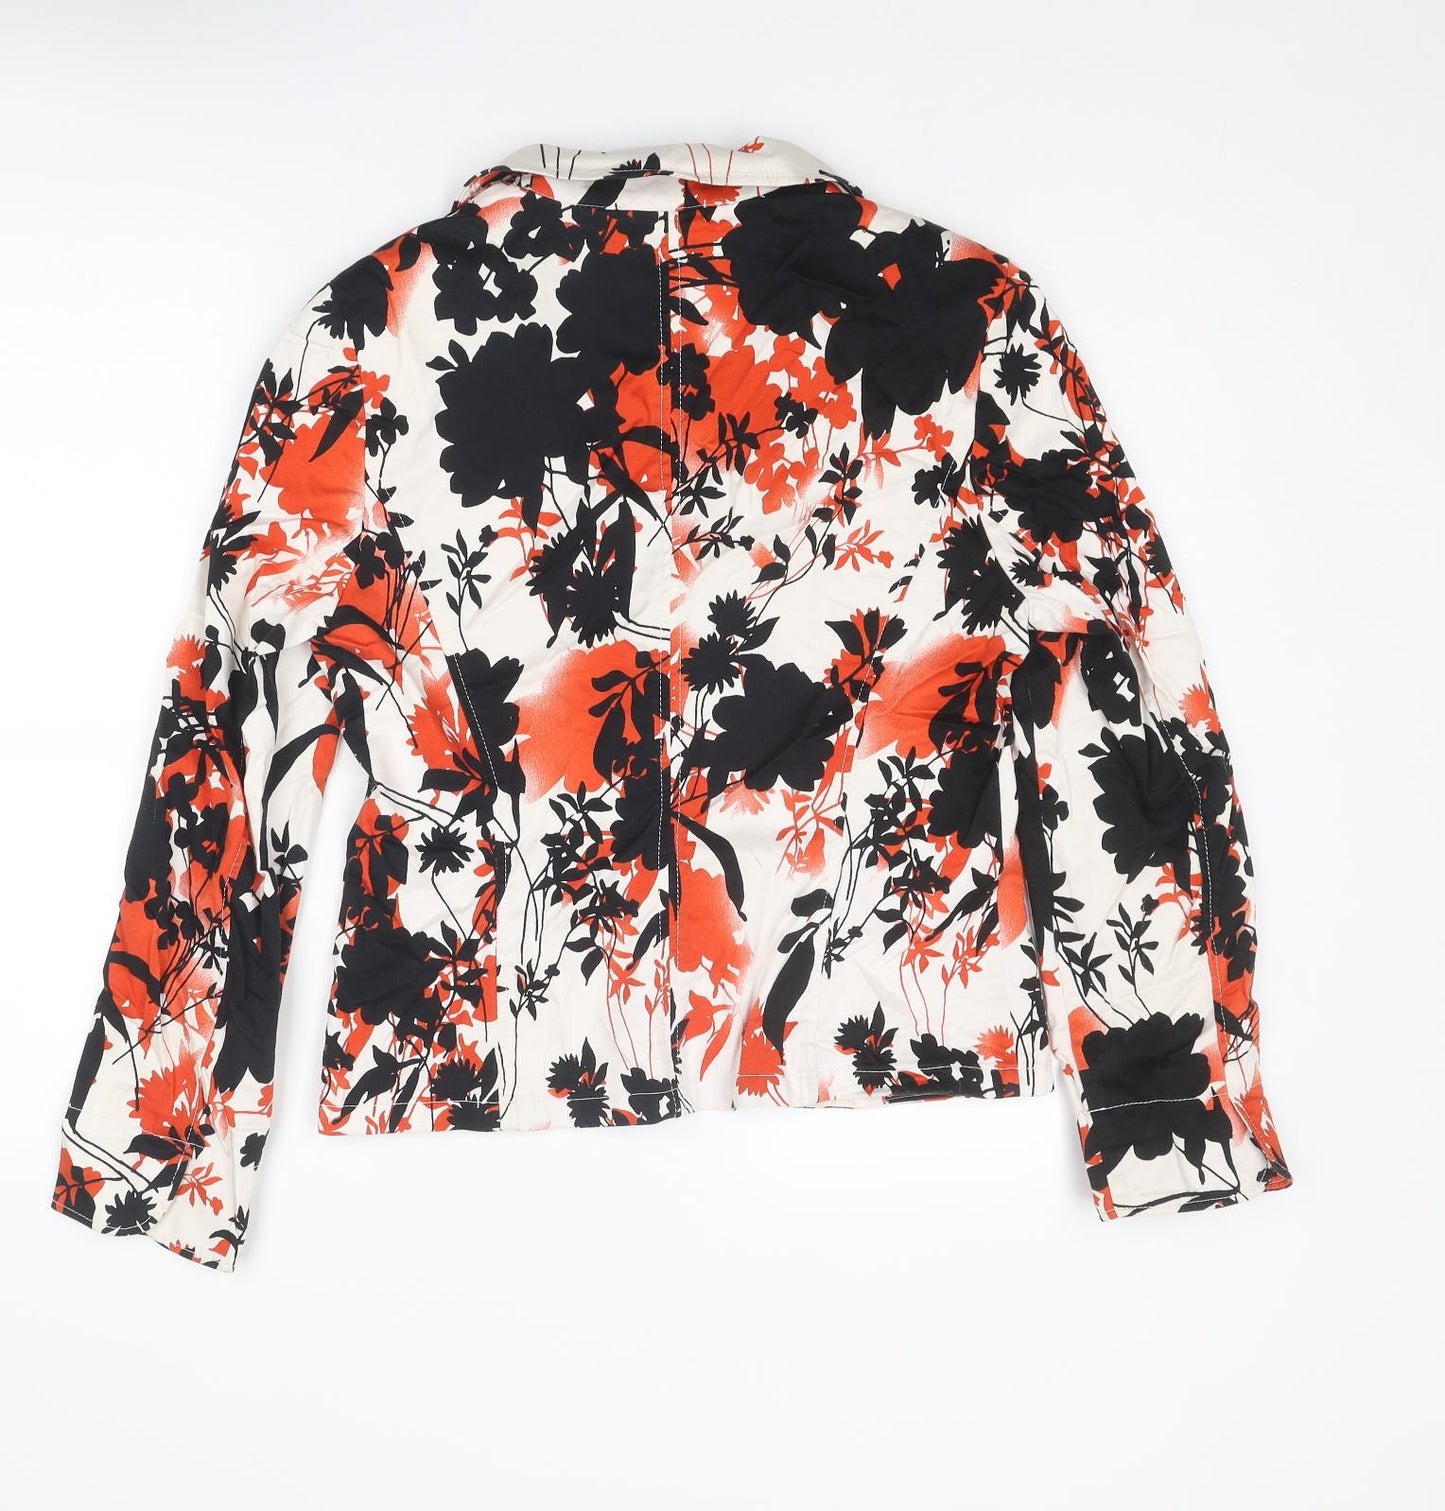 Steilmann Womens Multicoloured Floral Jacket Blazer Size 14 Button